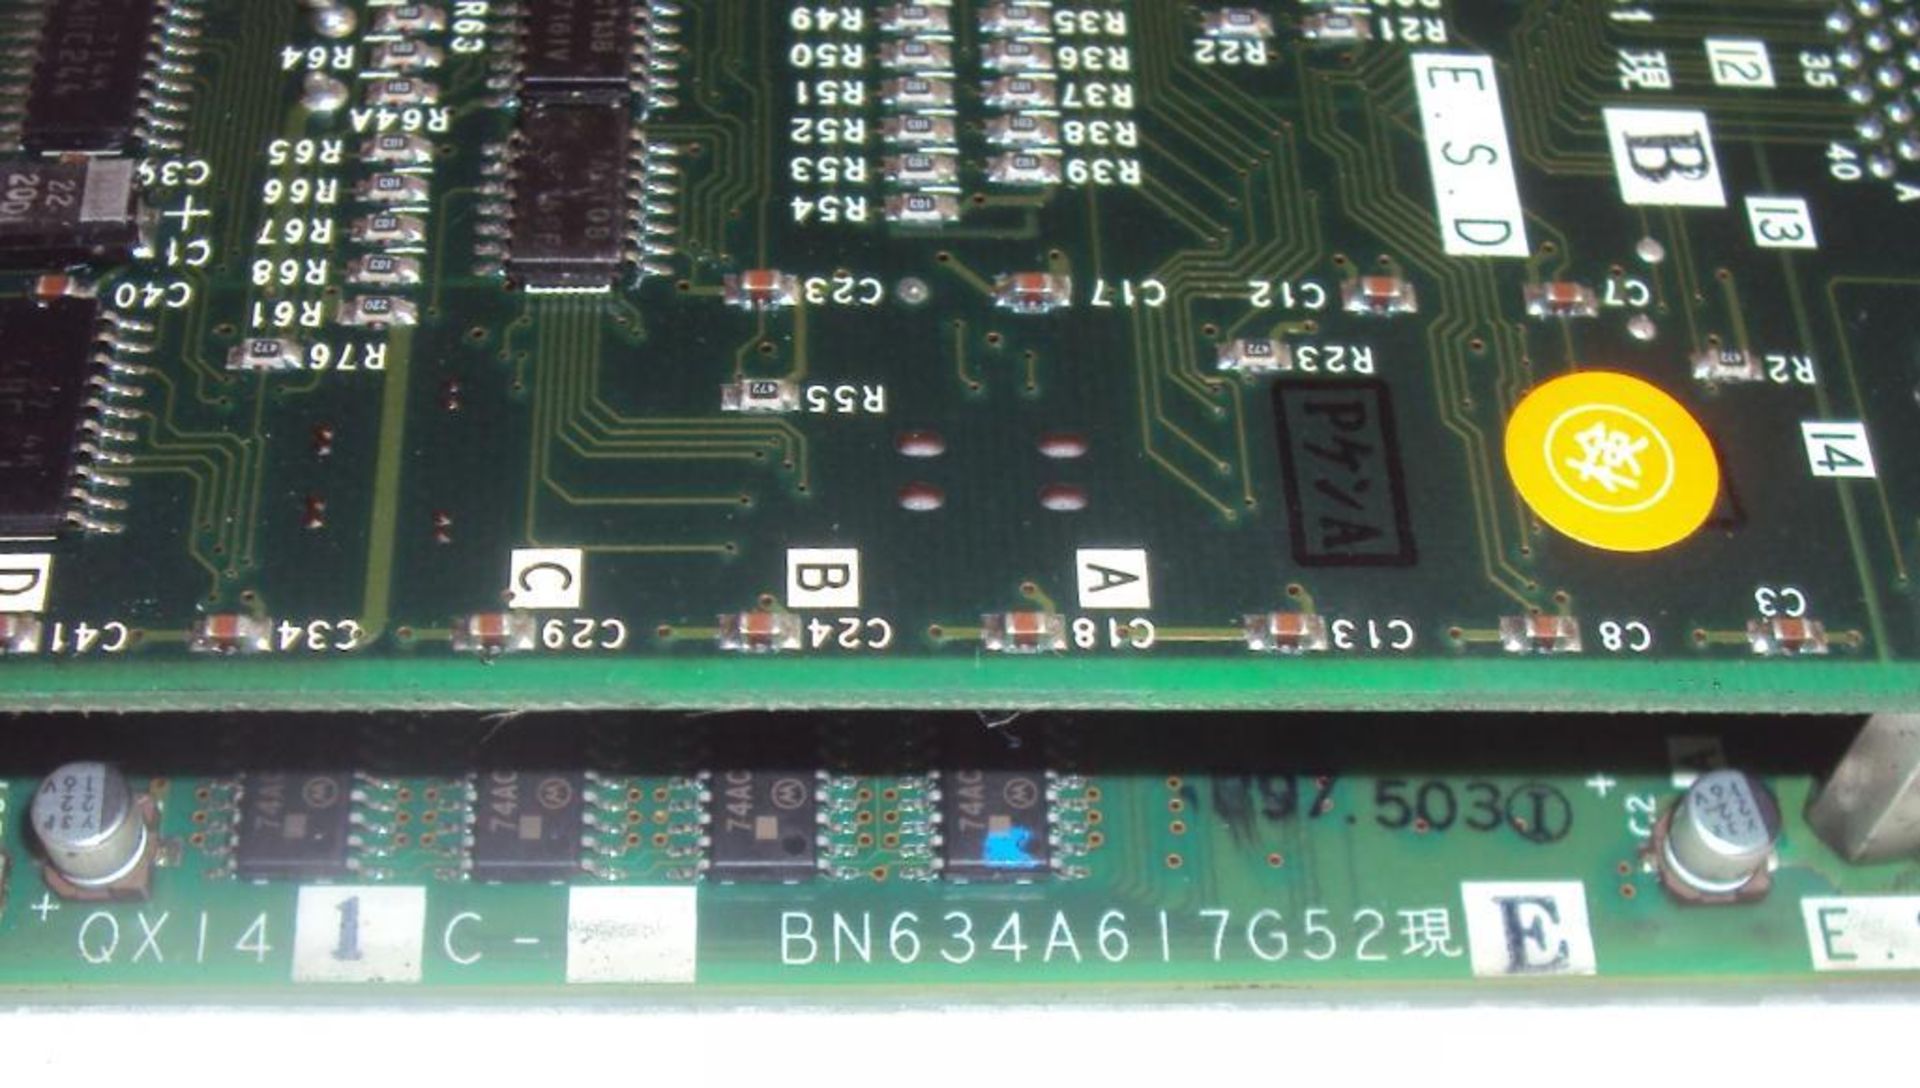 Mitsubishi Mazatrol QX141C BN634A617G52 CPU Module w/ (2) Memory Cassettes QX812 & QX818 and BN634A7 - Image 6 of 7